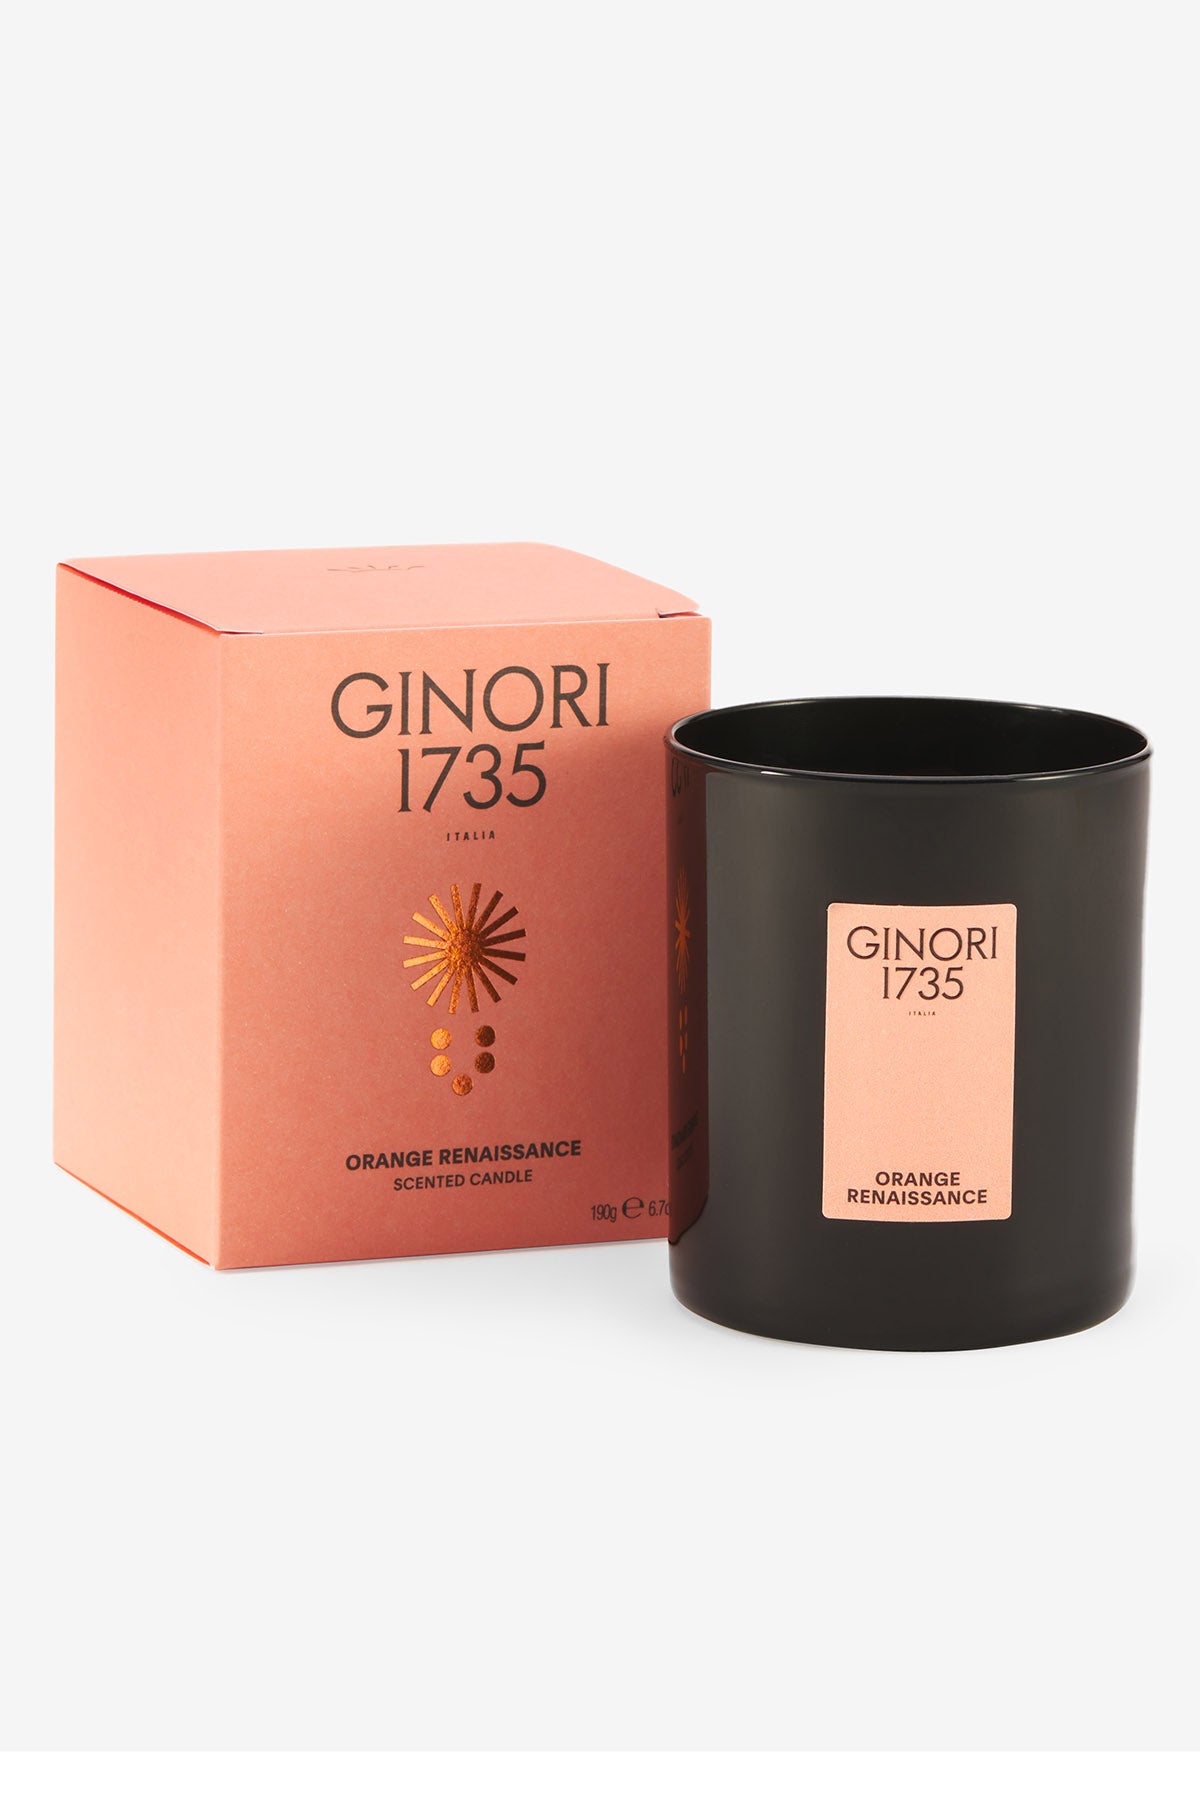 Ginori 1735 orange renaissance scented candle refill for il seguace 190 gr-2